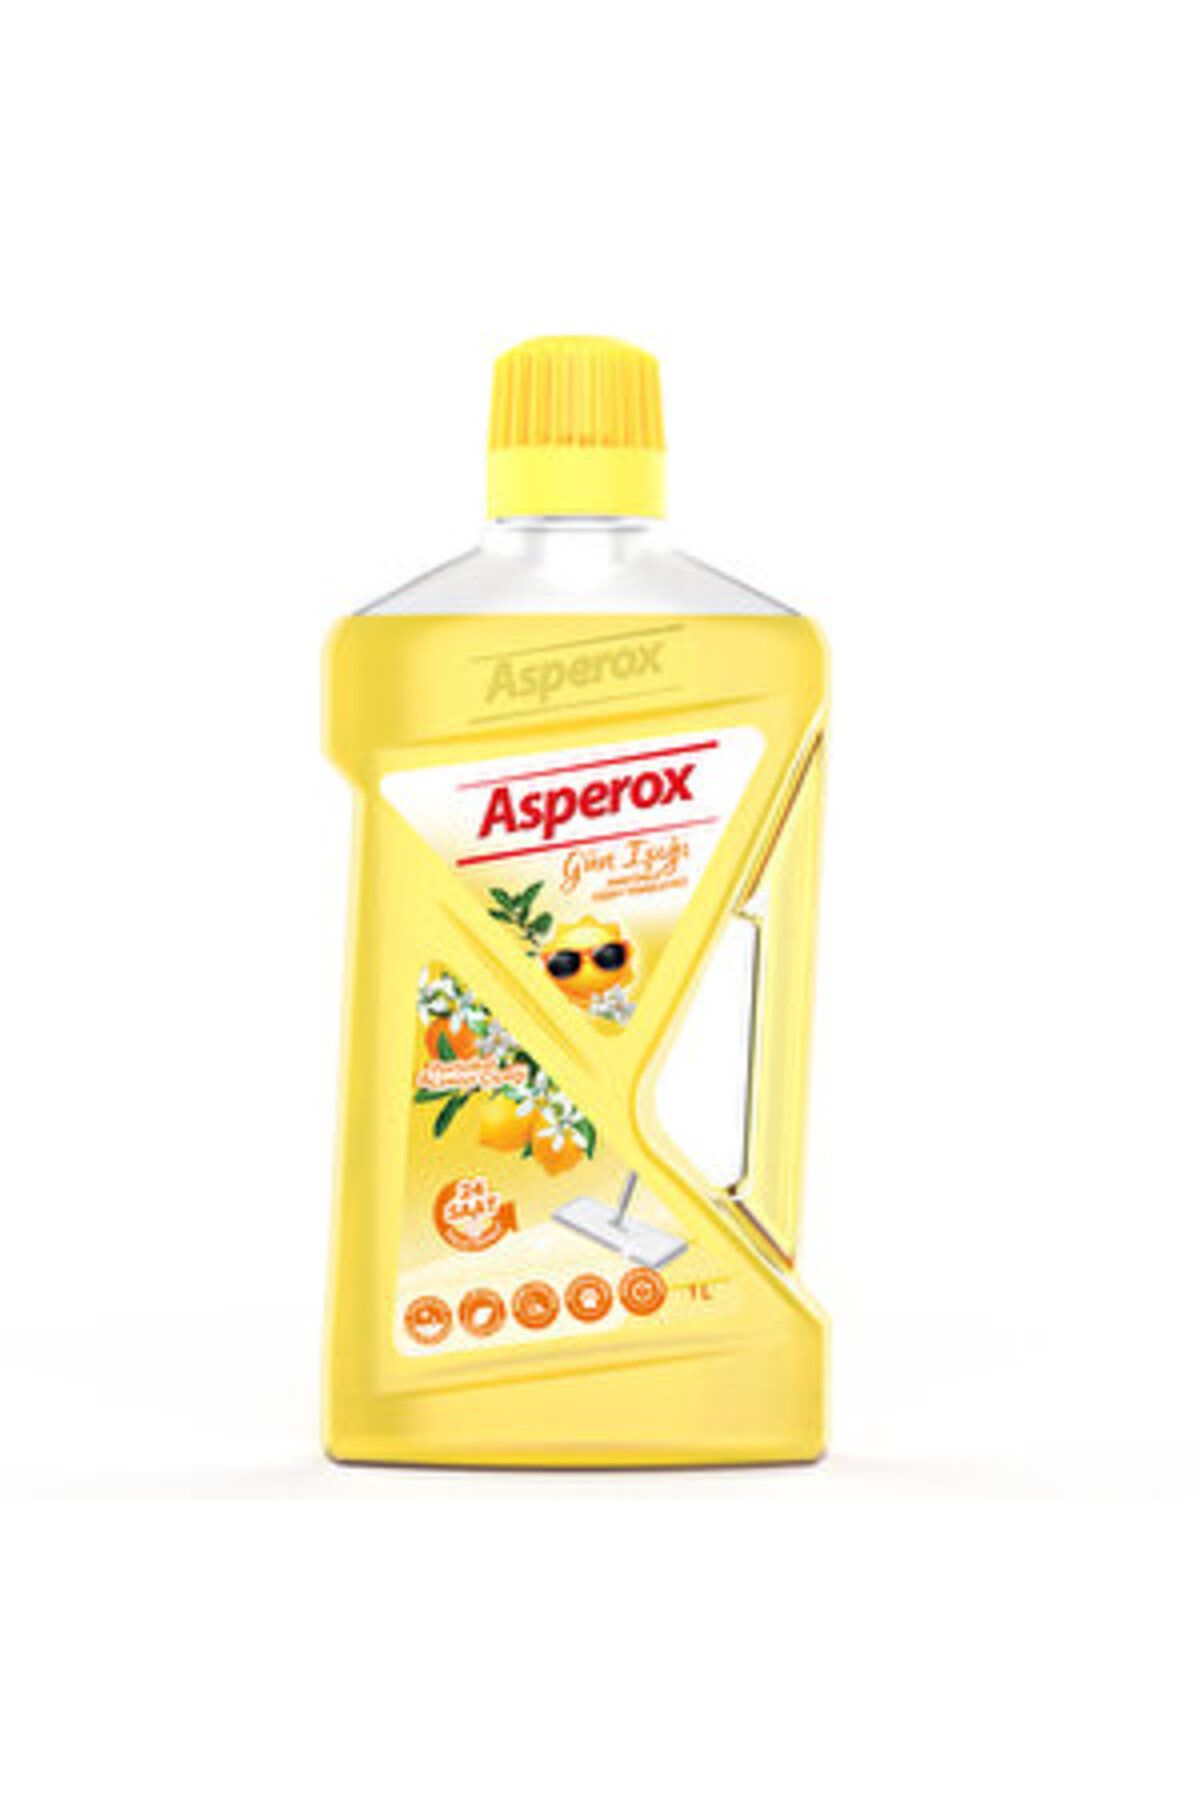 ASPEROX ( 5 ADET ) Asperox Yüzey Temizleyici Gün Işığı 1 L (Sarı)